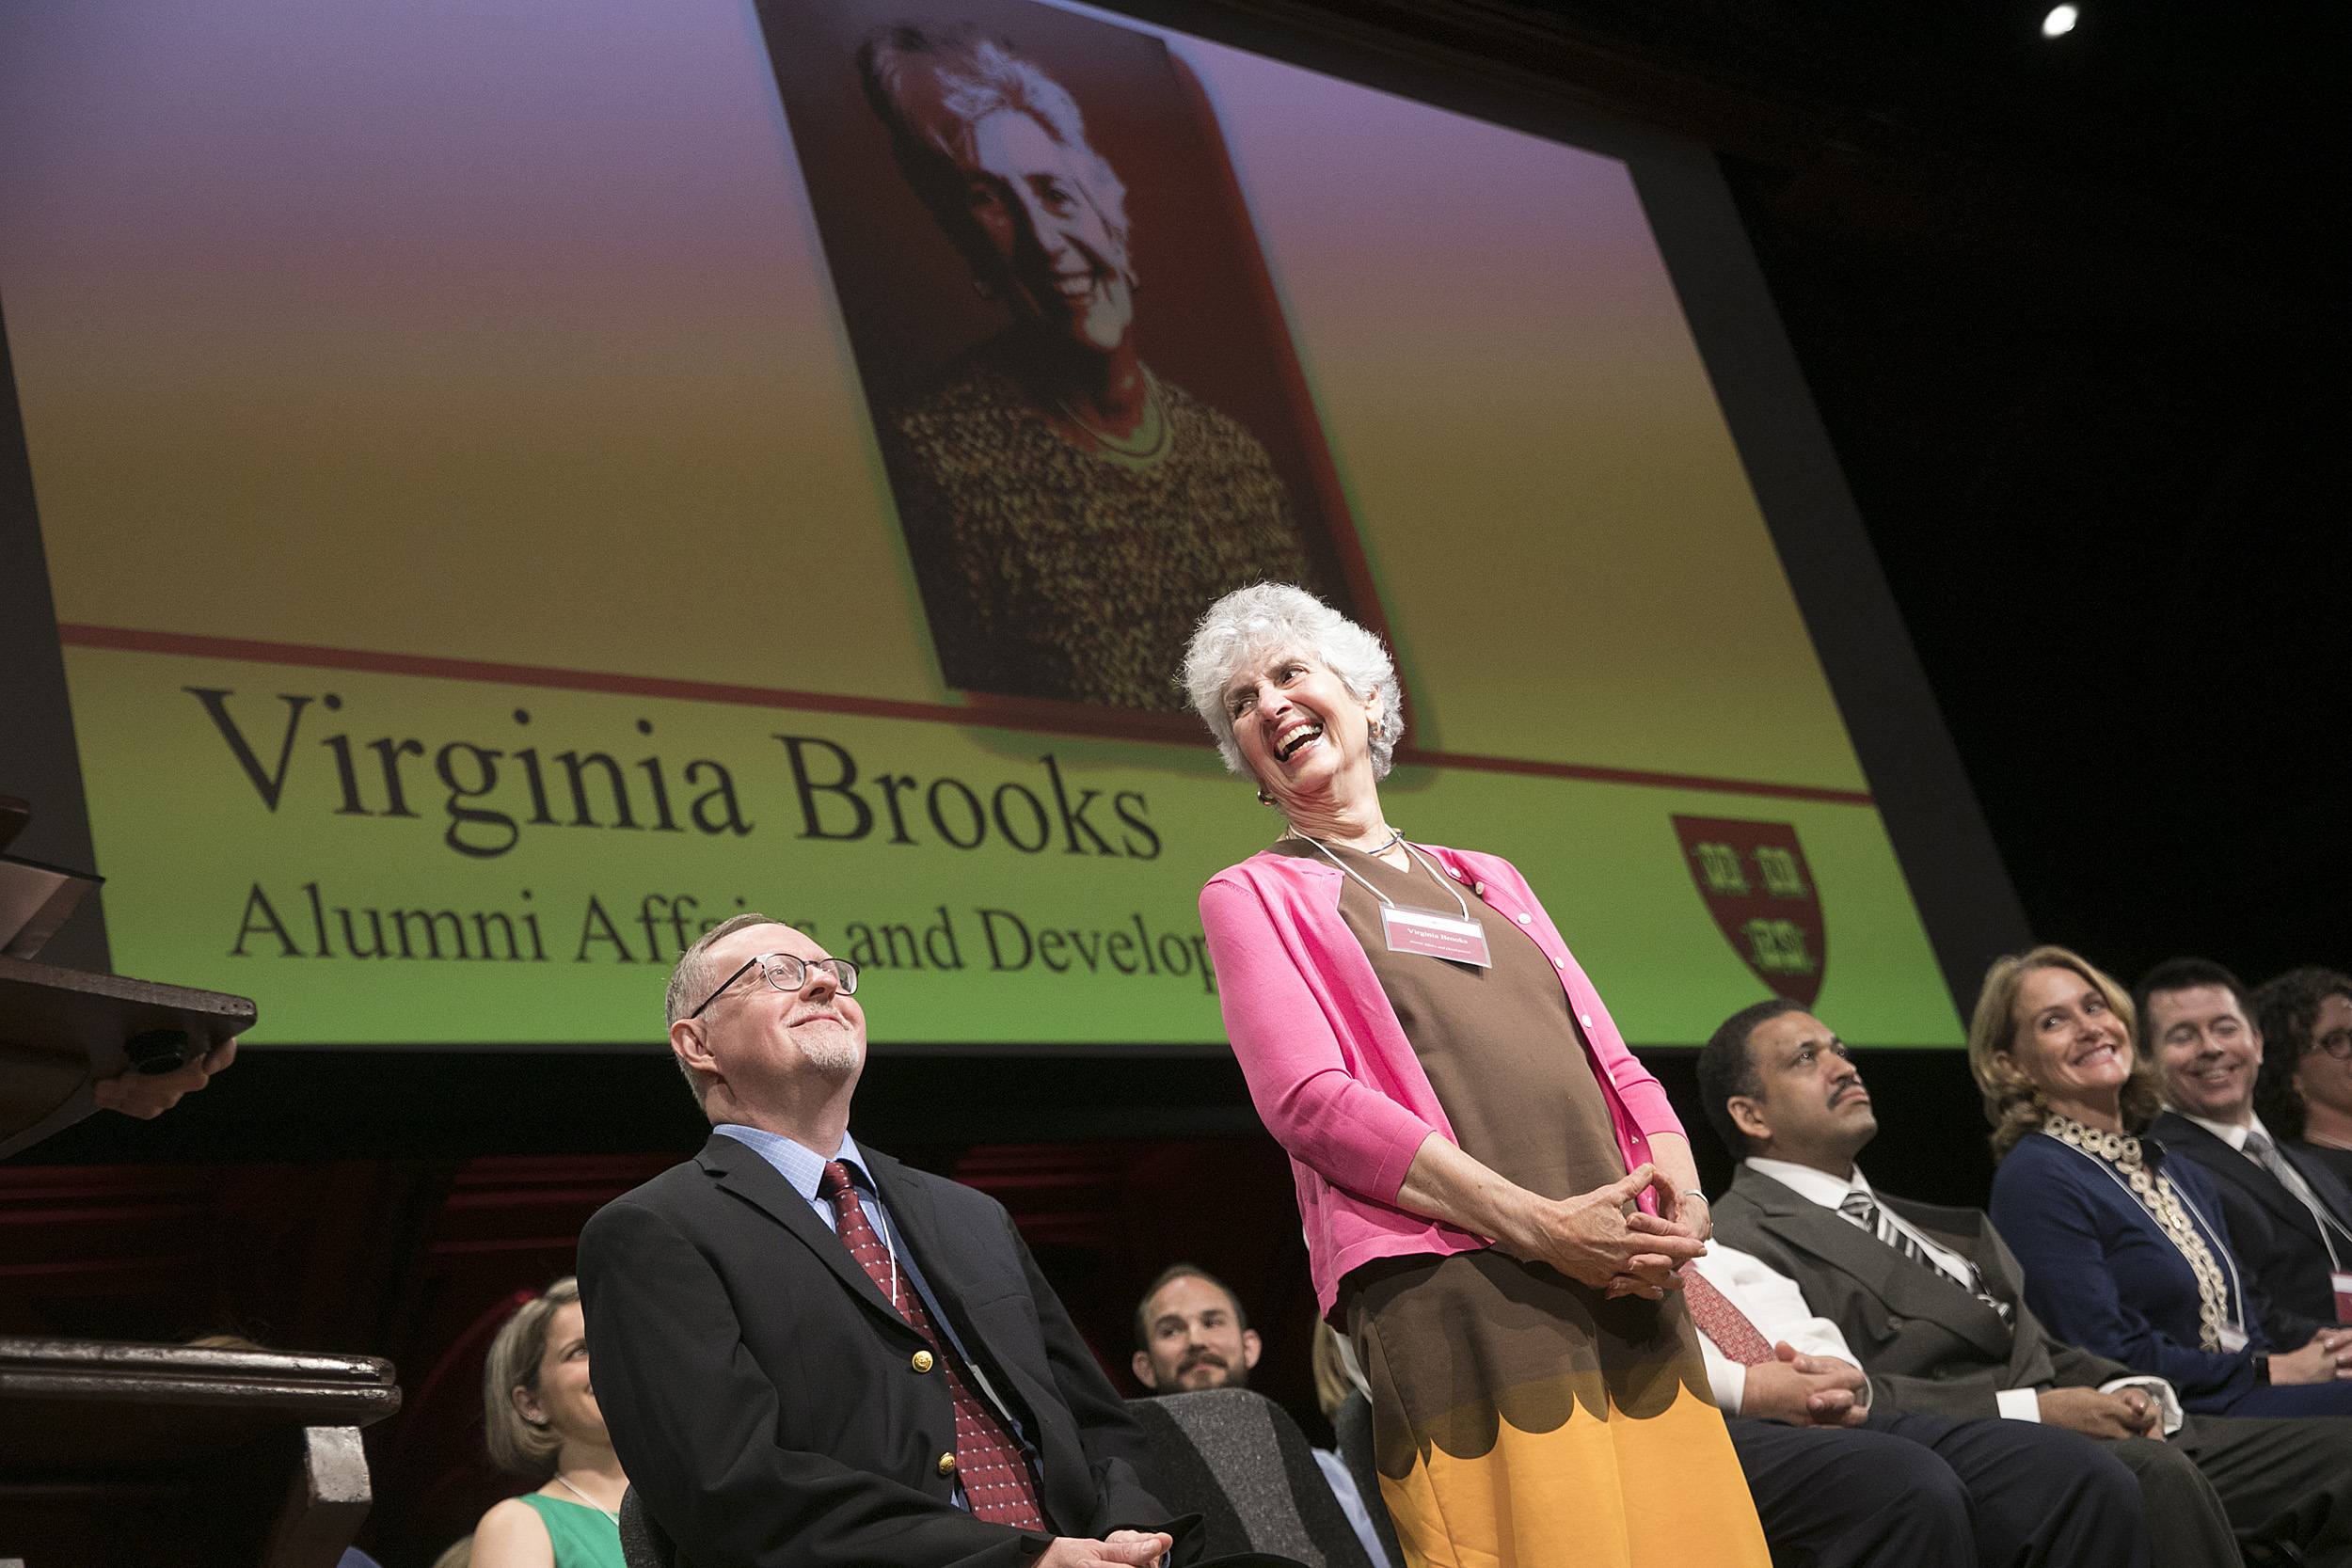 Virginia Brooks laughs onstage